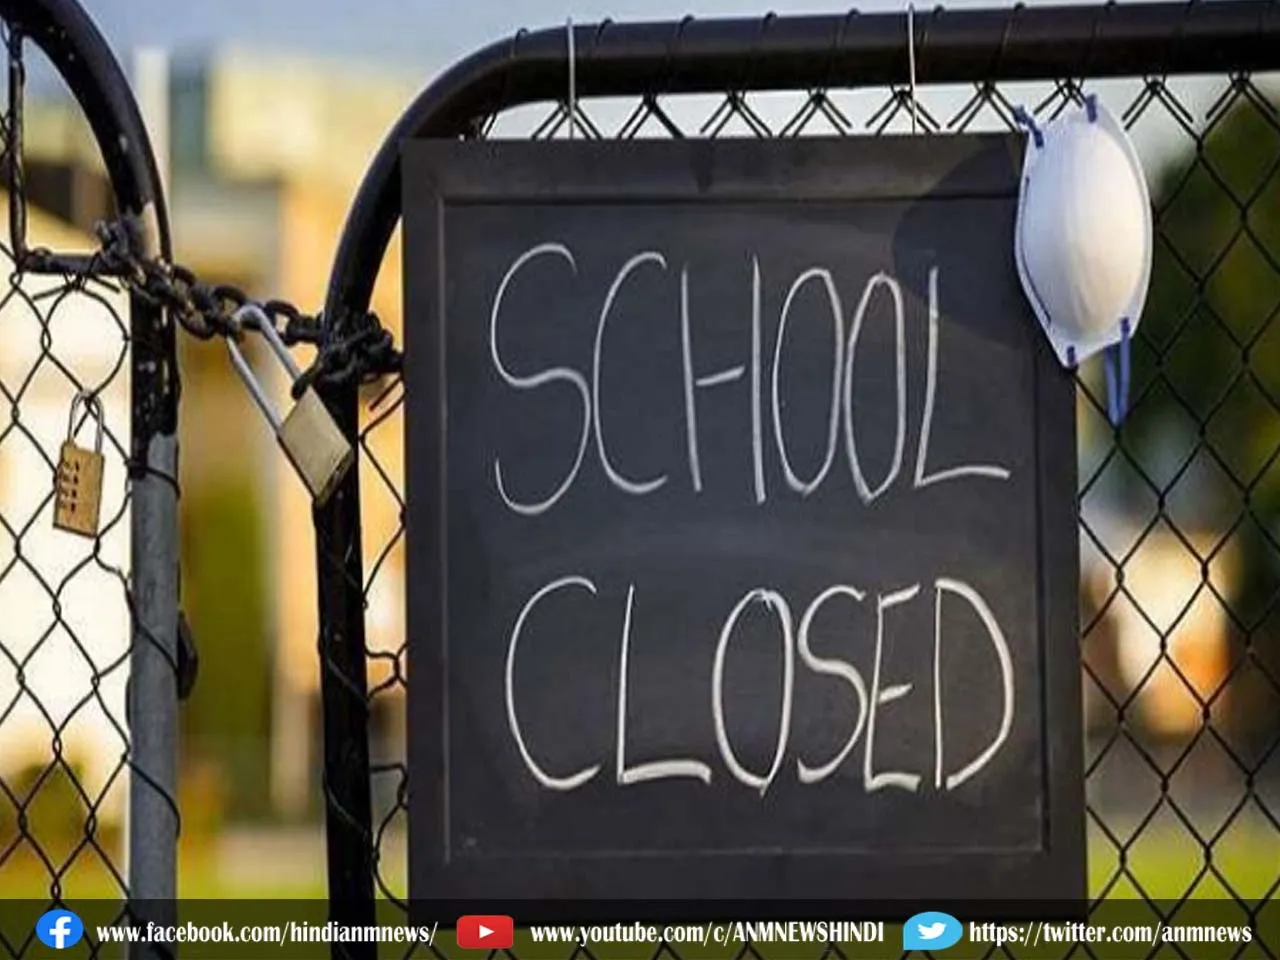 Noida Greater Noida News: नोएडा में दो दिन के लिए बंद रहेंगे सभी स्कूल, जानिए वजह